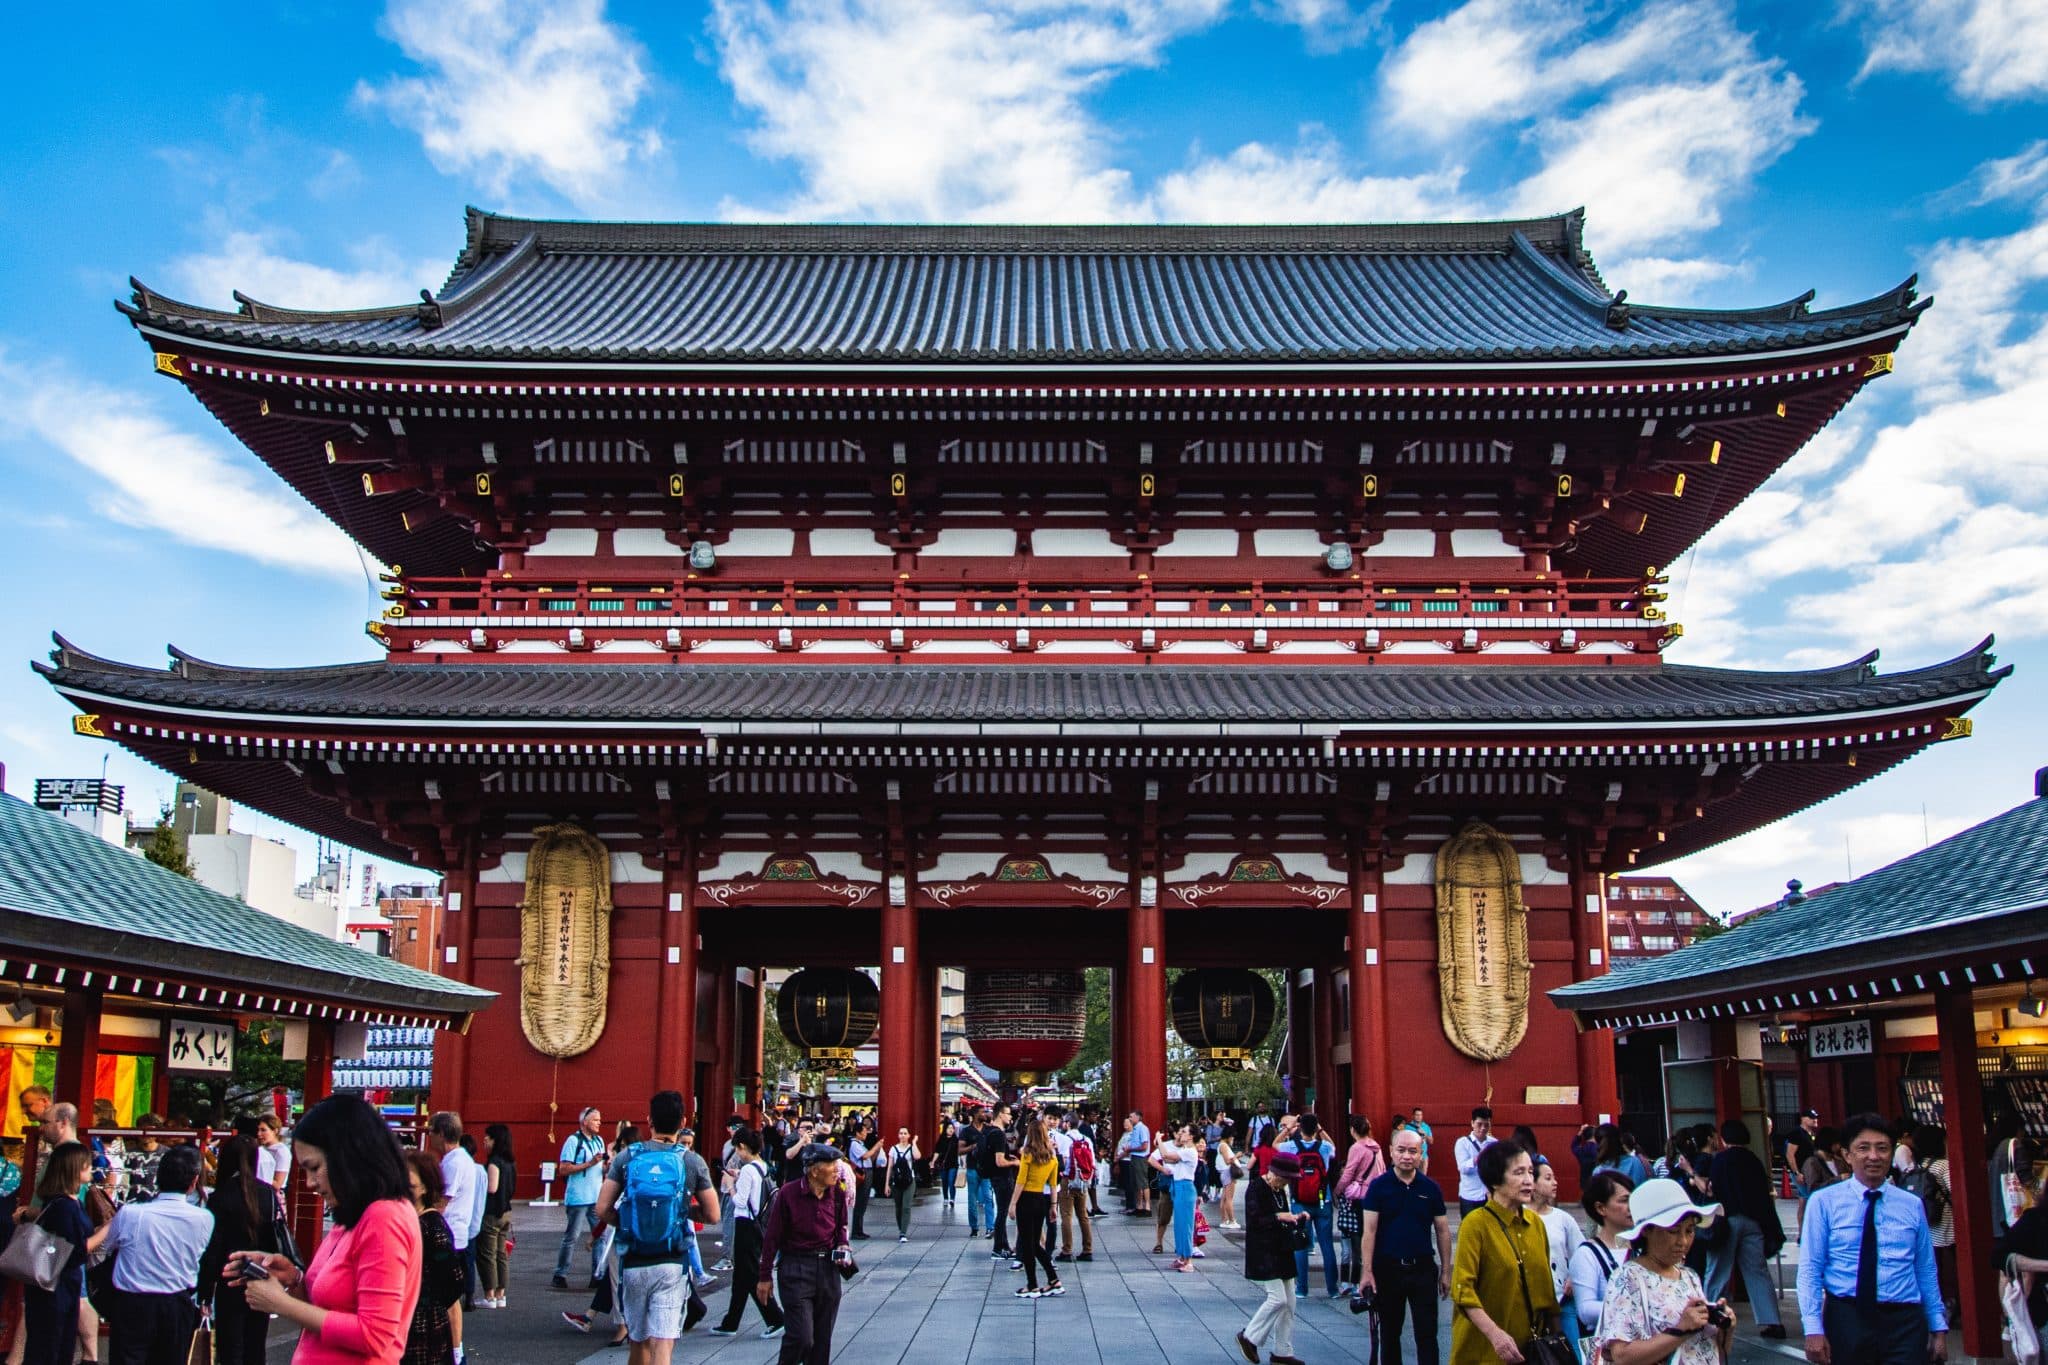 Asakusa Temple Photo By Nicholas Doherty On Unsplash